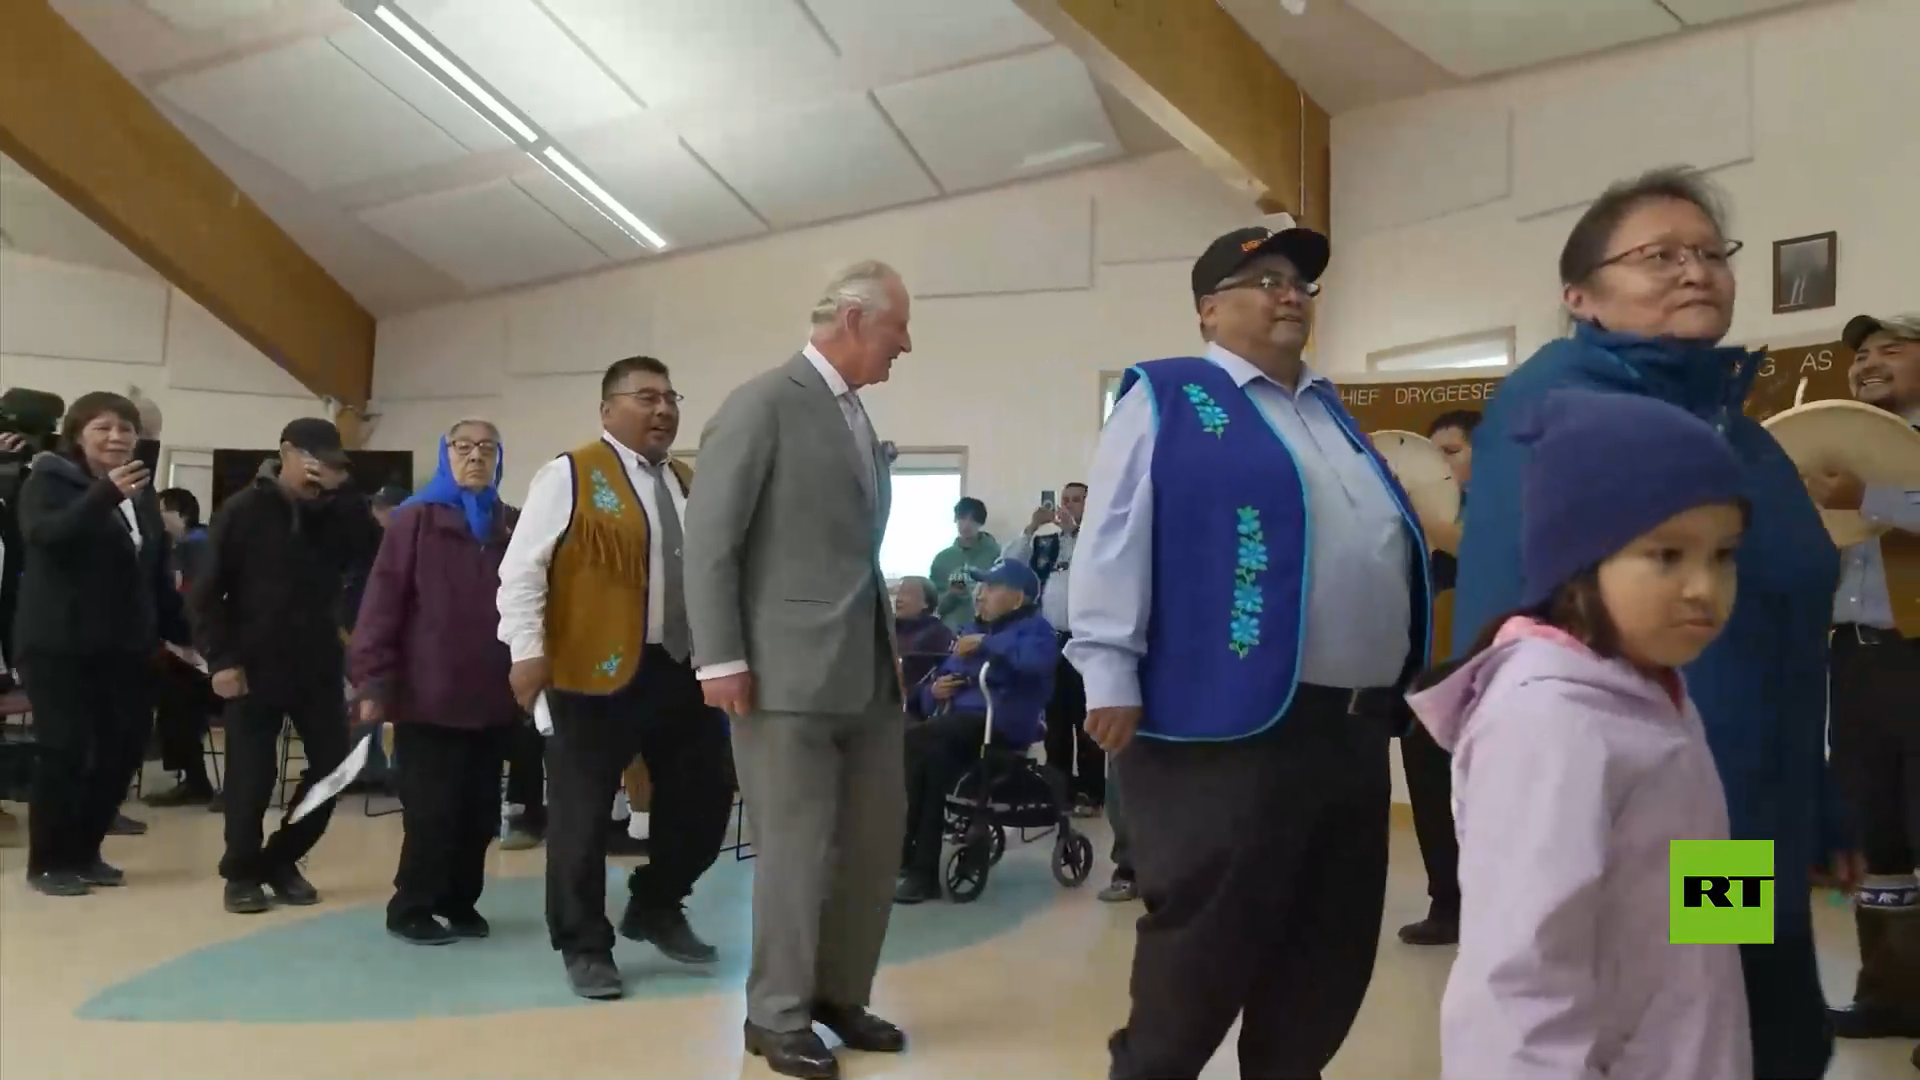 بالفيديو.. الأمير تشارلز يشارك في رقص تقليدي أثناء زيارته كندا